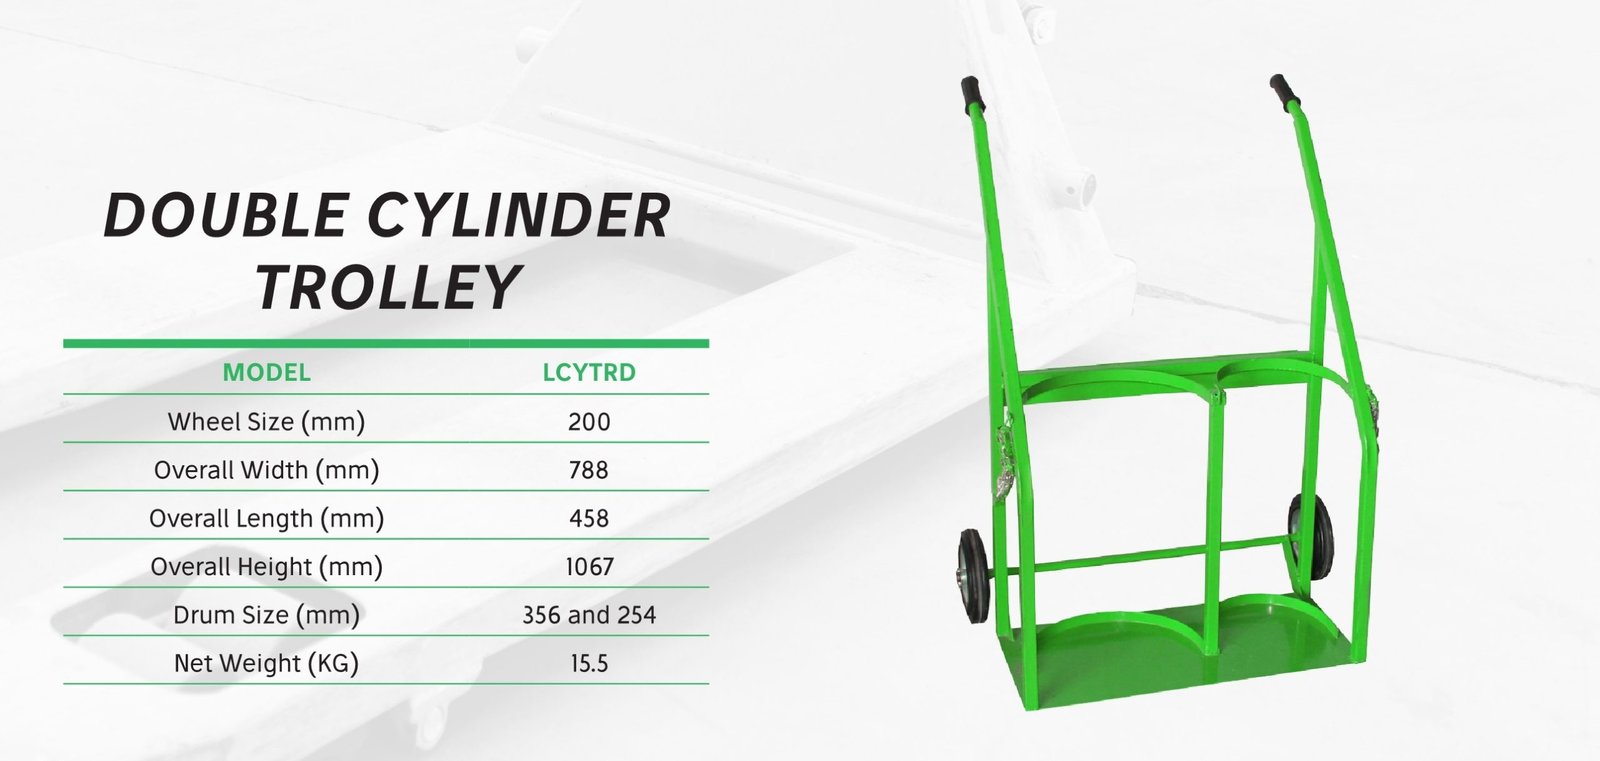 Trolleys
trolleys supplier in dubai and uae
Cylinder Trolleys - Double